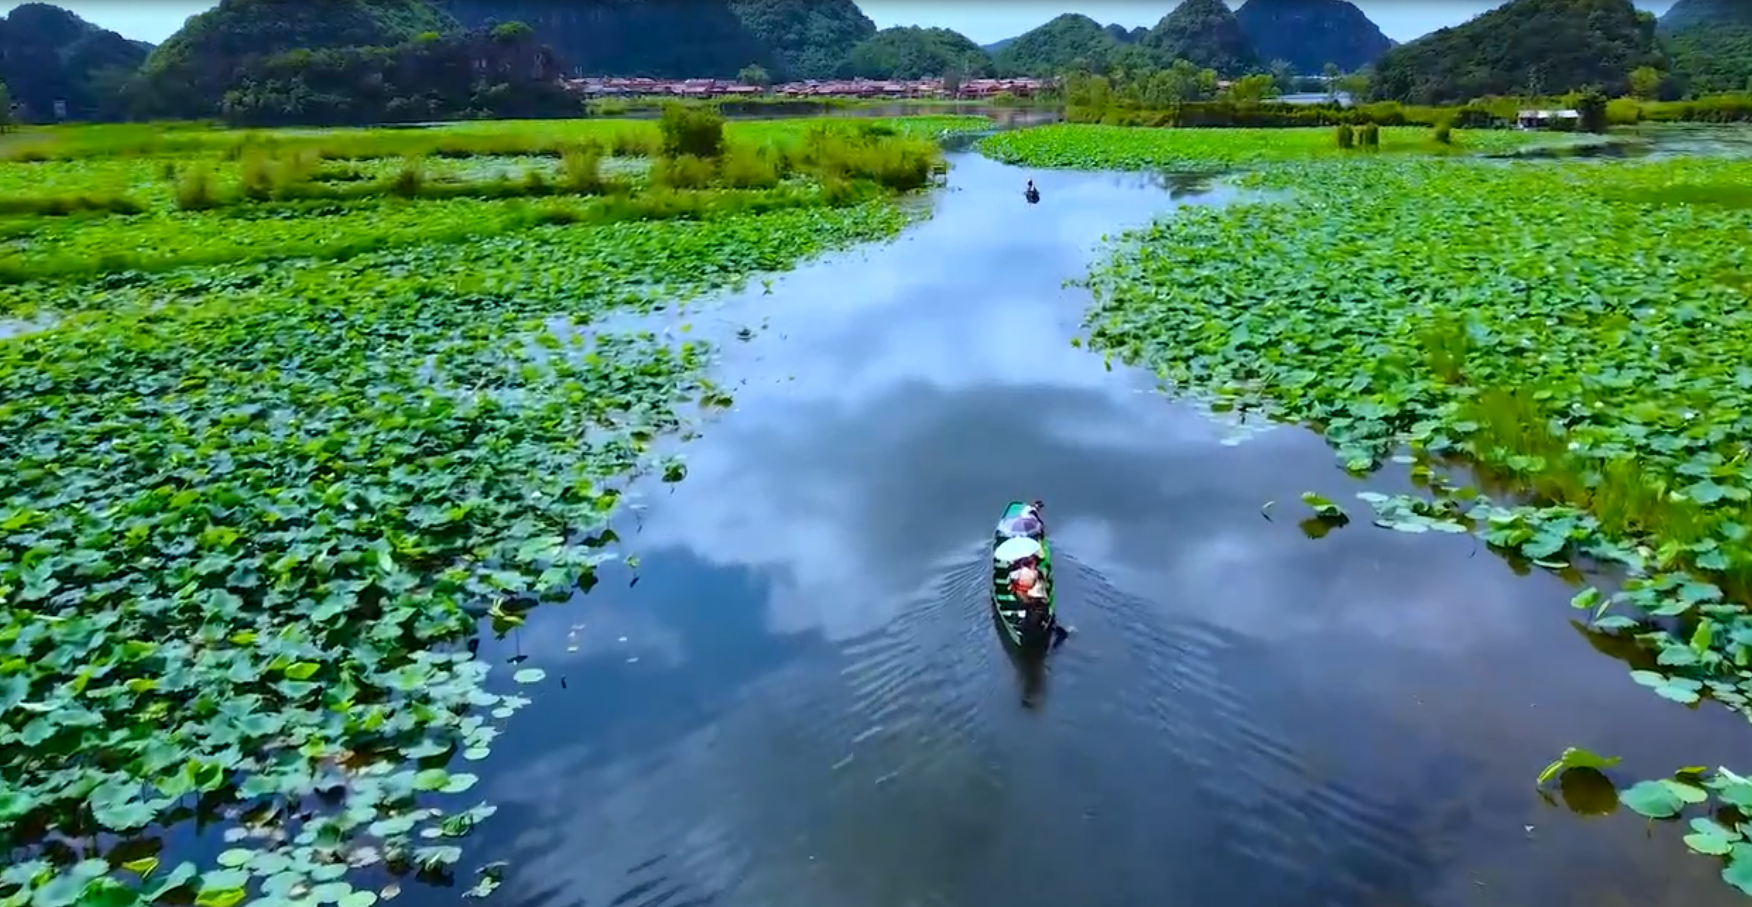 云南夏日最美的地方「普者黑」在流动的山水画中赏荷打水仗